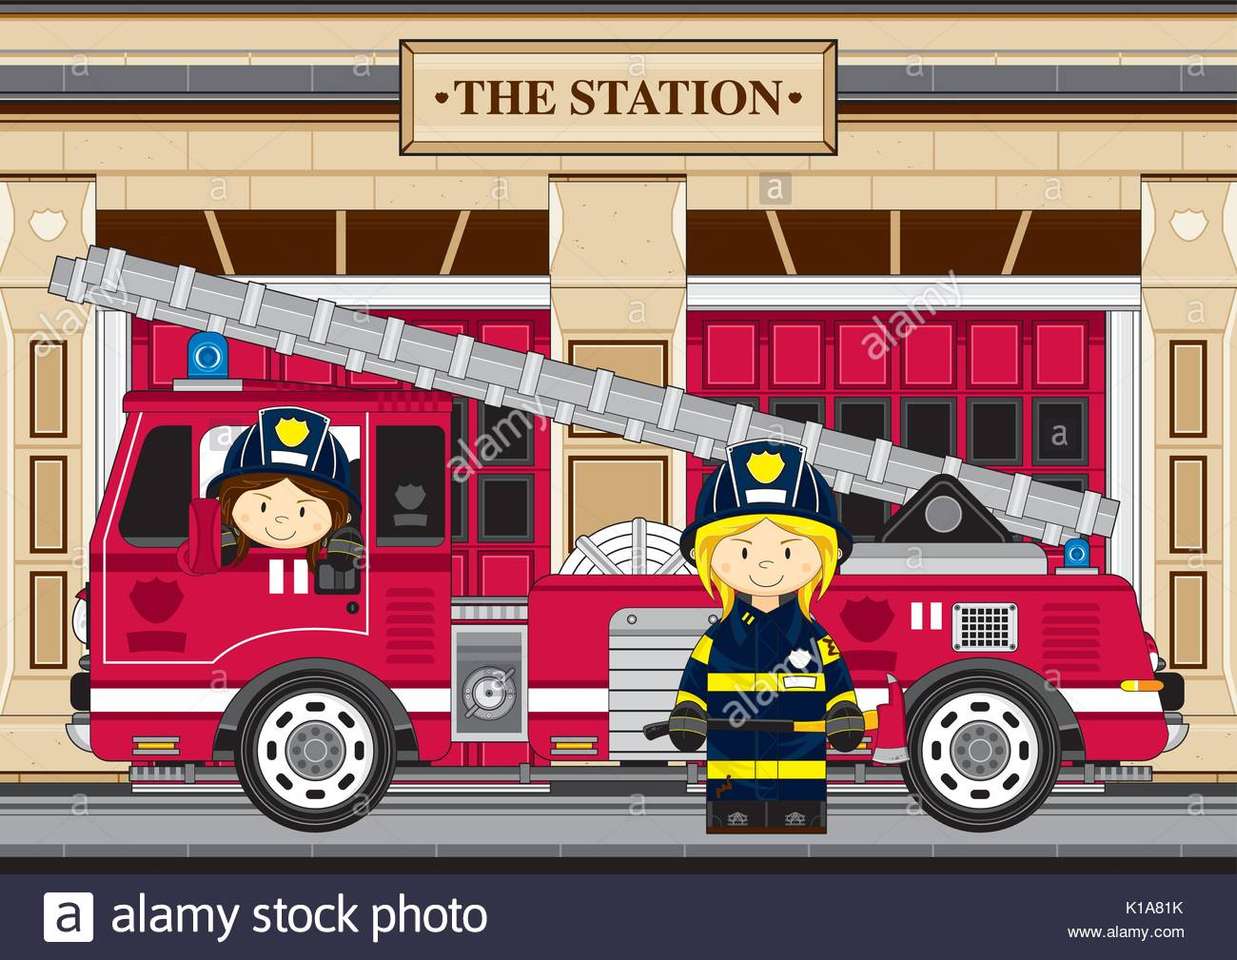 Poszukiwacze przygód, którzy chcieli zostać strażakami puzzle online